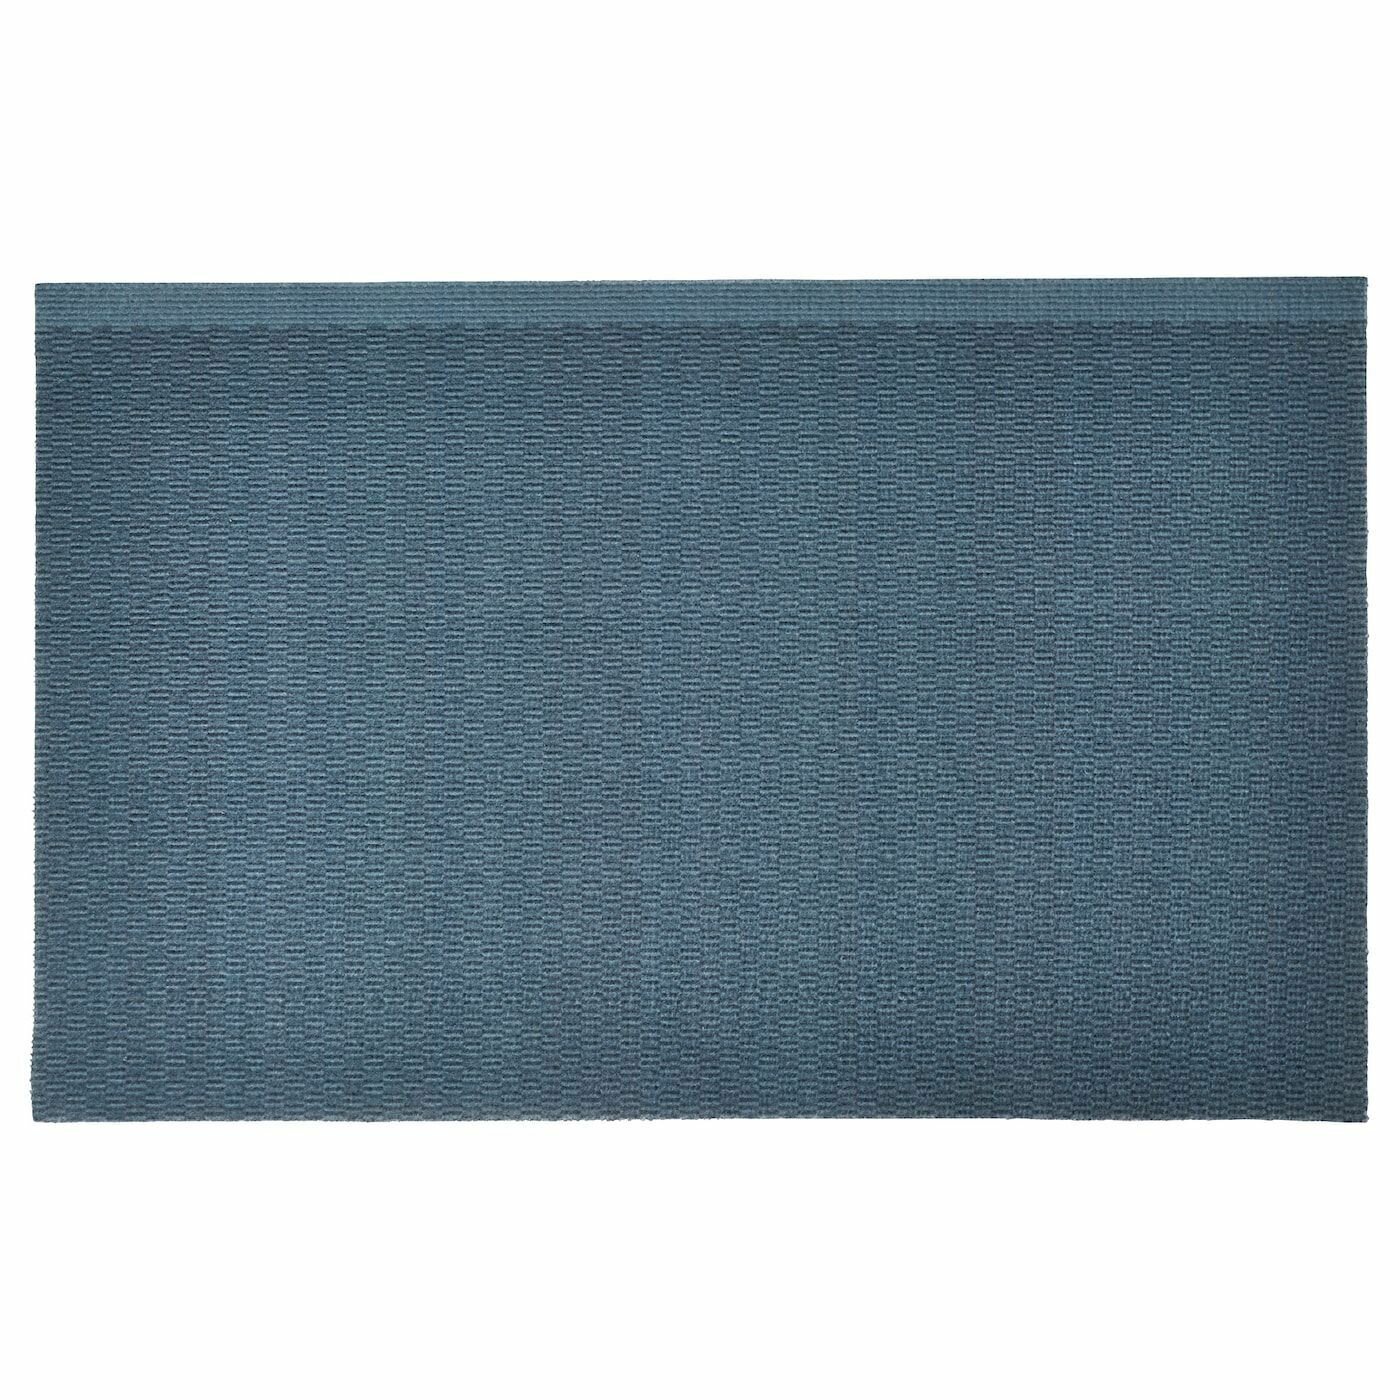 KLAMPENBORG Придверный коврик для дома IKEA - синий 50x80 см (20500105)